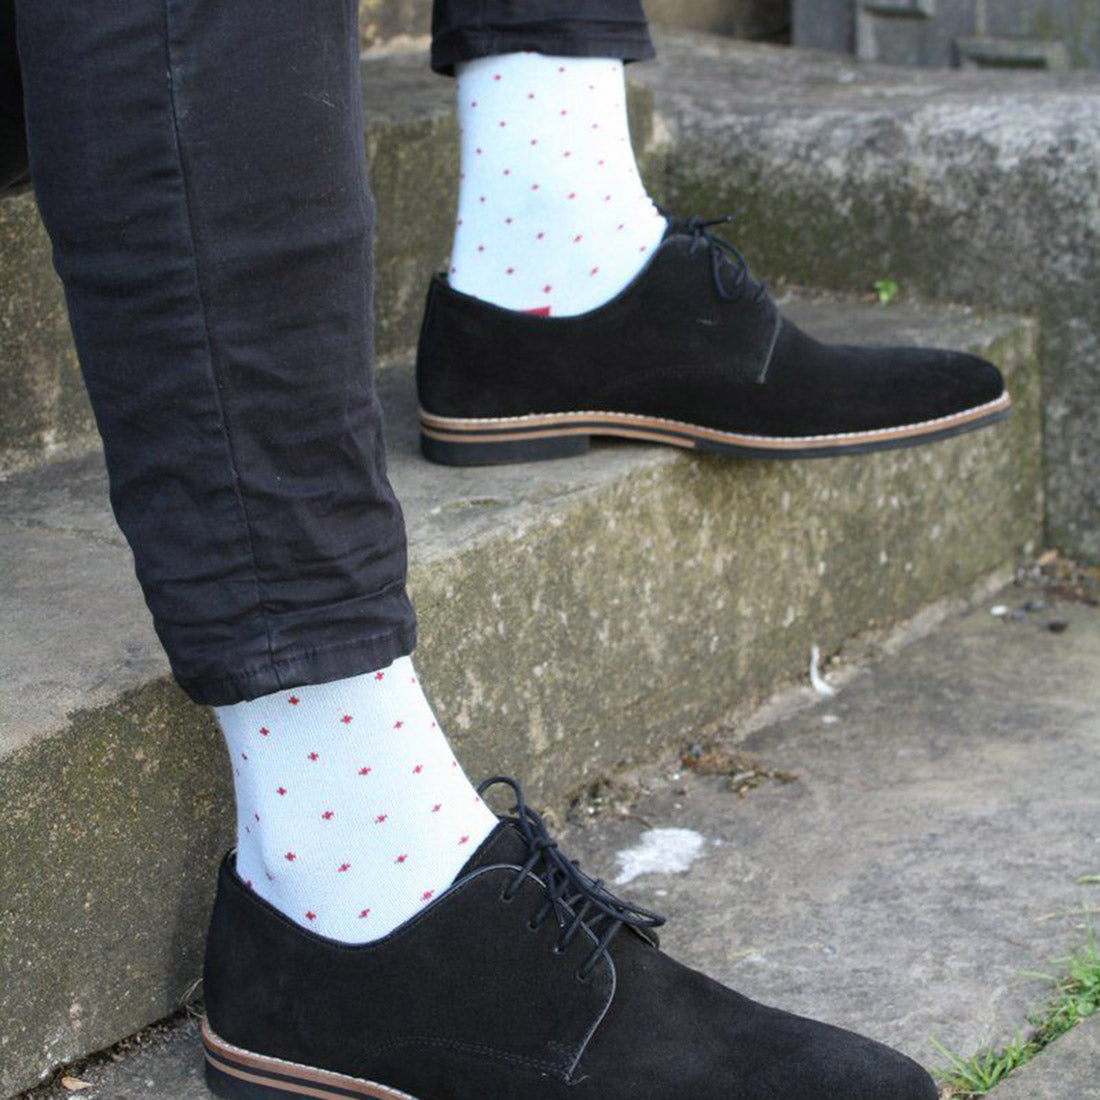 socks-spotted-pale-blue-bamboo-socks-2.jpg